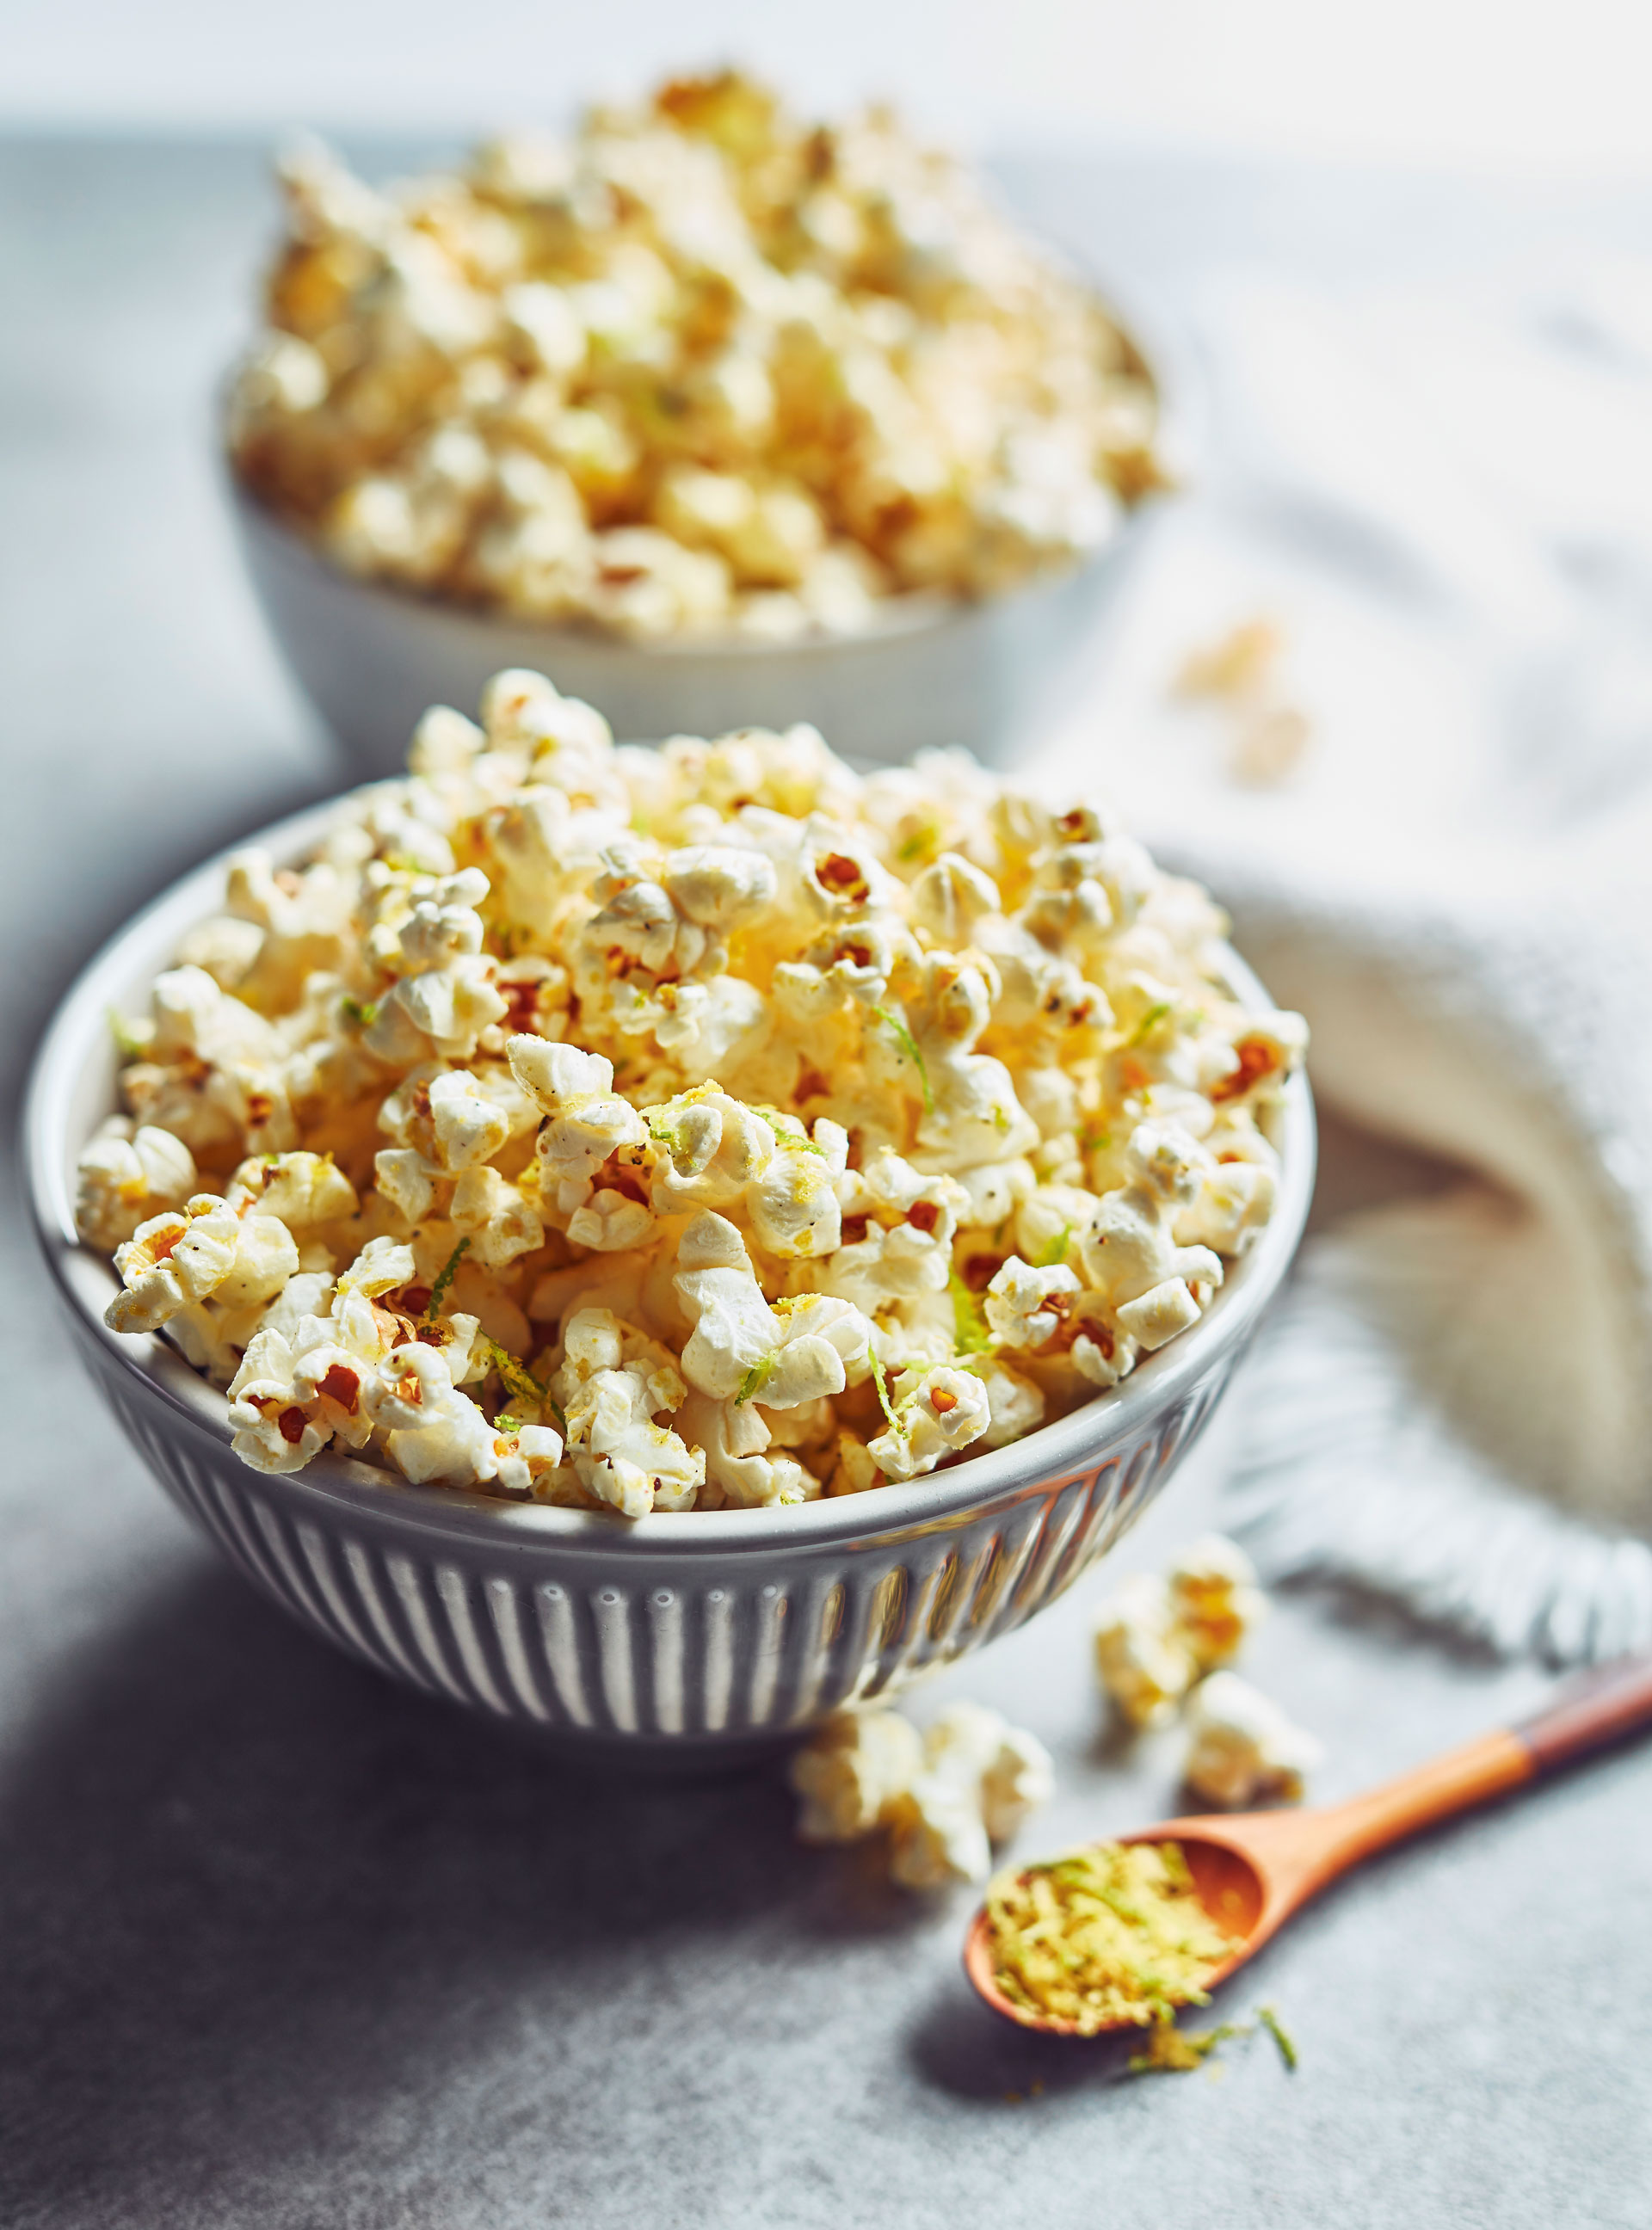 Recette Popcorn - Popcorn Thaï - Le Grain Qui Pop